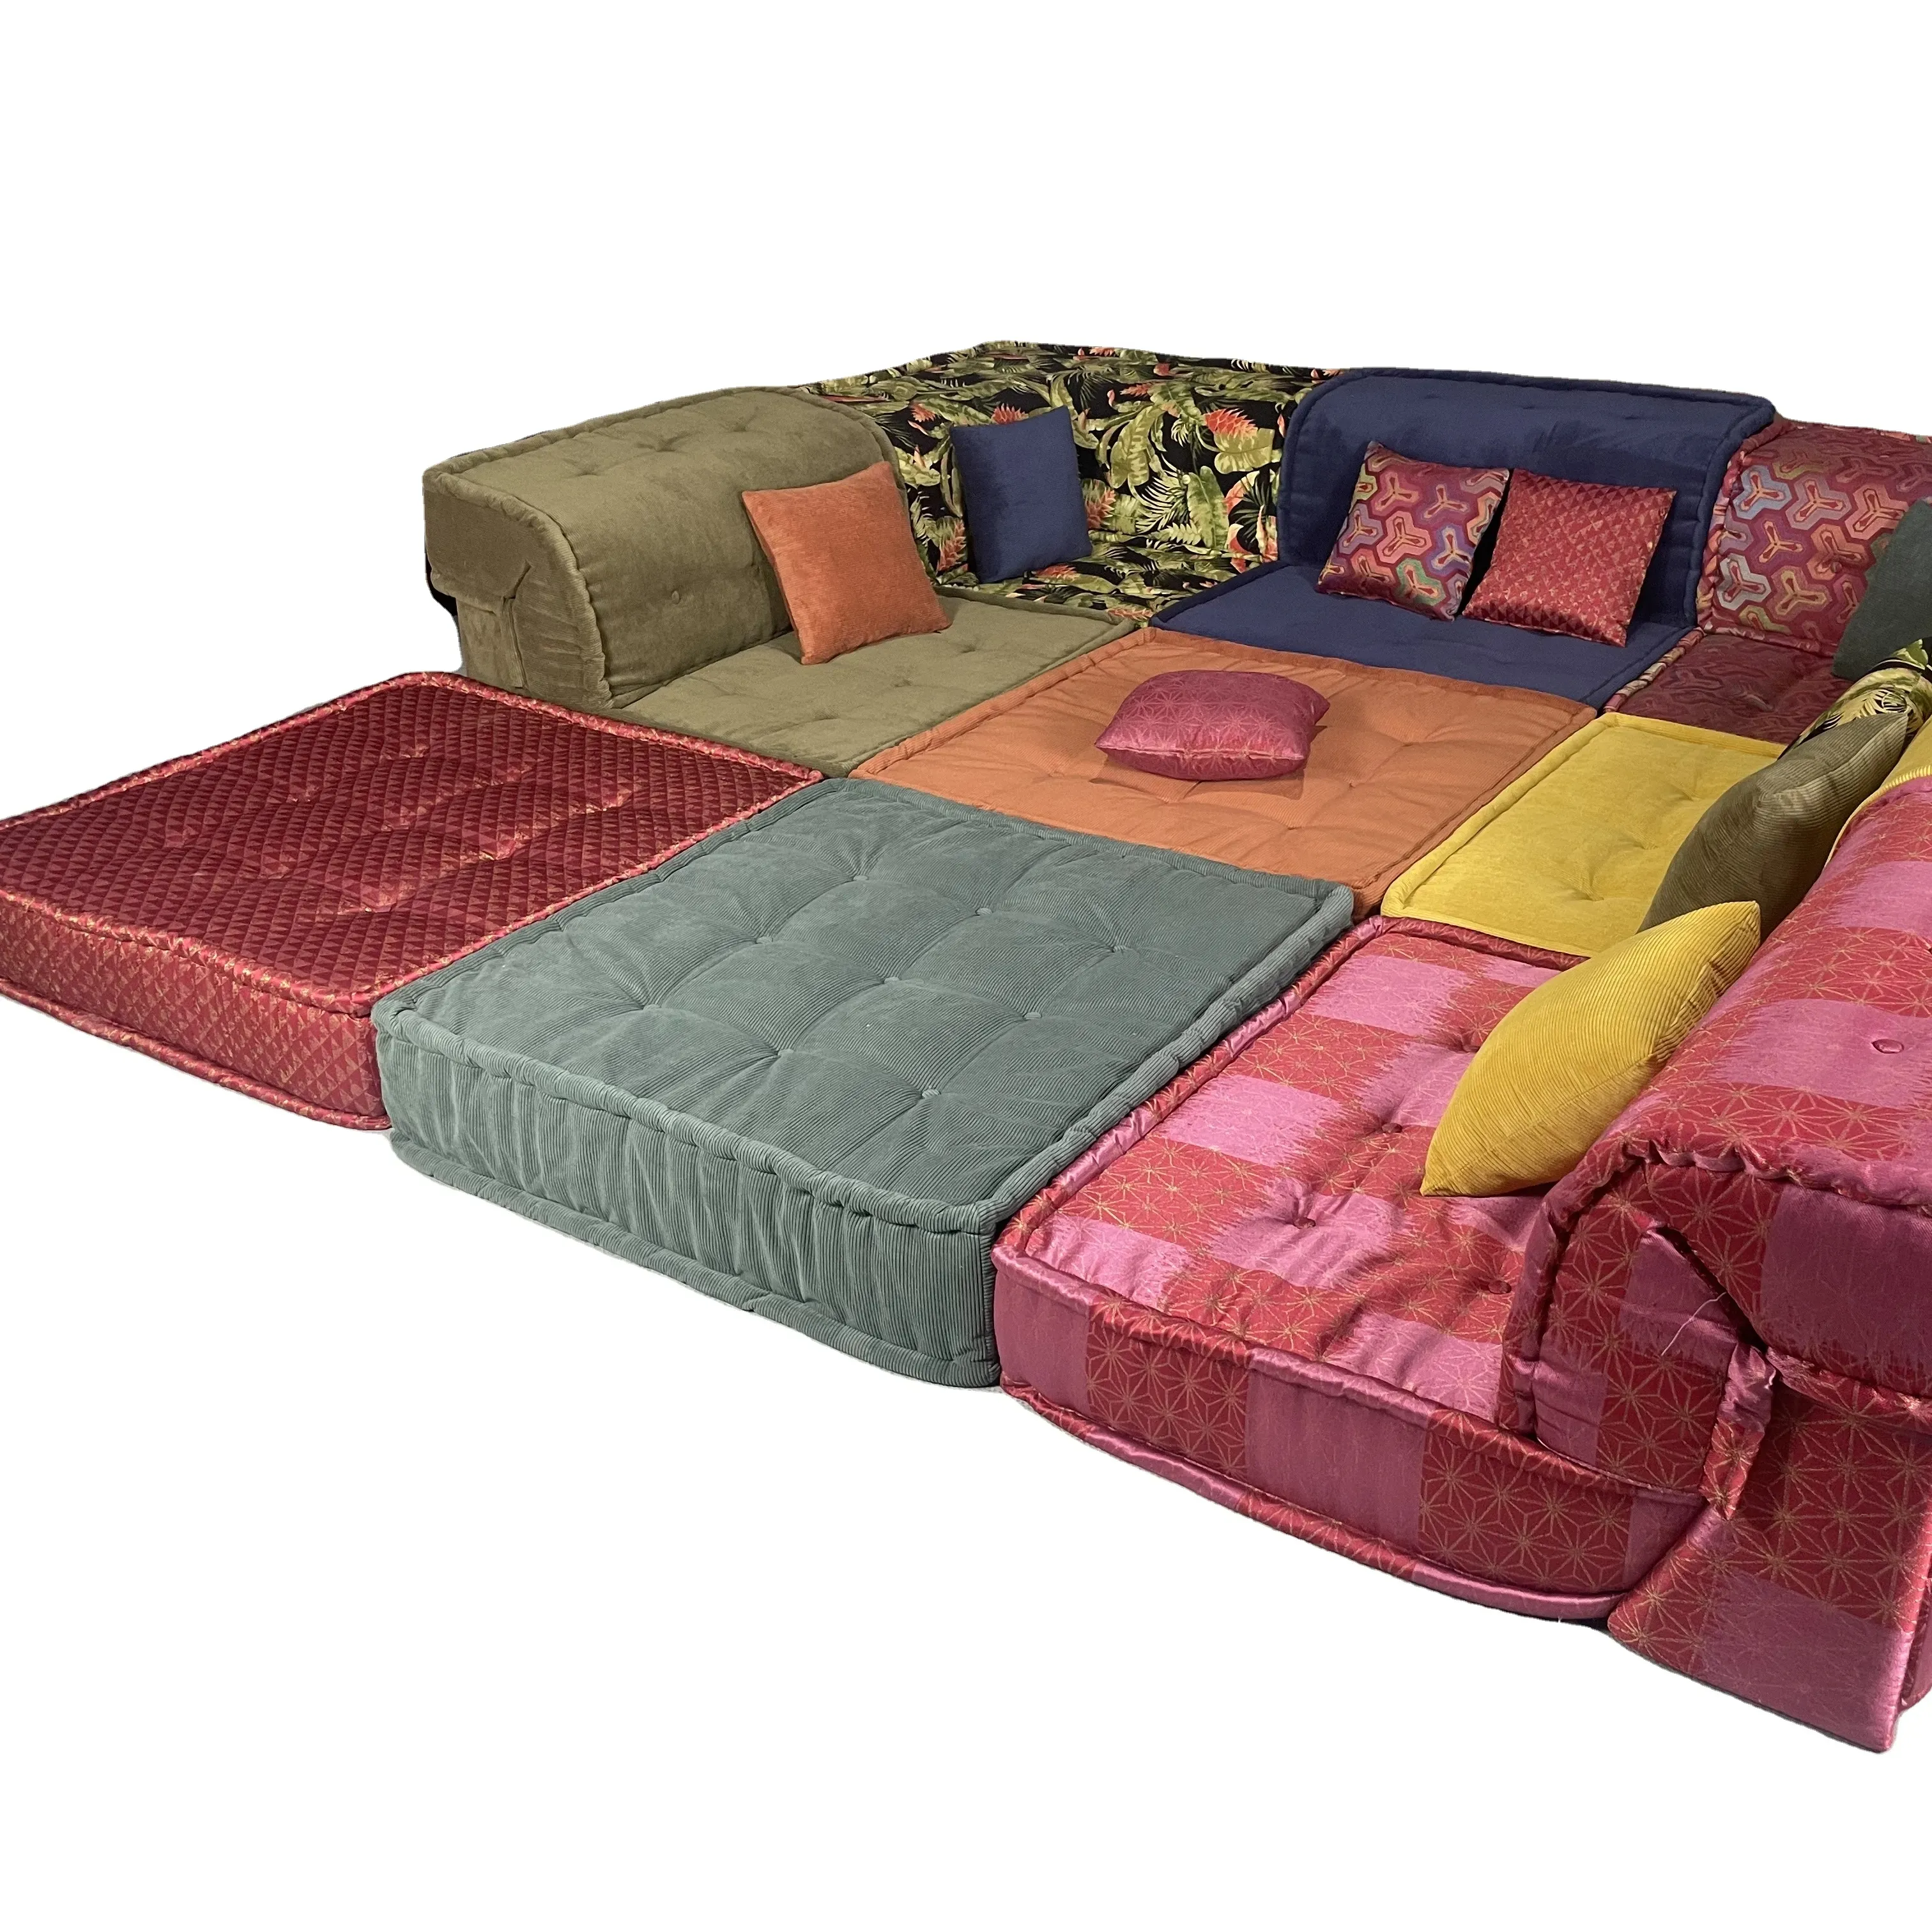 Benutzer definierte Größe Schaum Kids Play Couch Set Miro-Wildleder Stoff Kids Couch Herstellung modulare Sofa Schnitts ofa